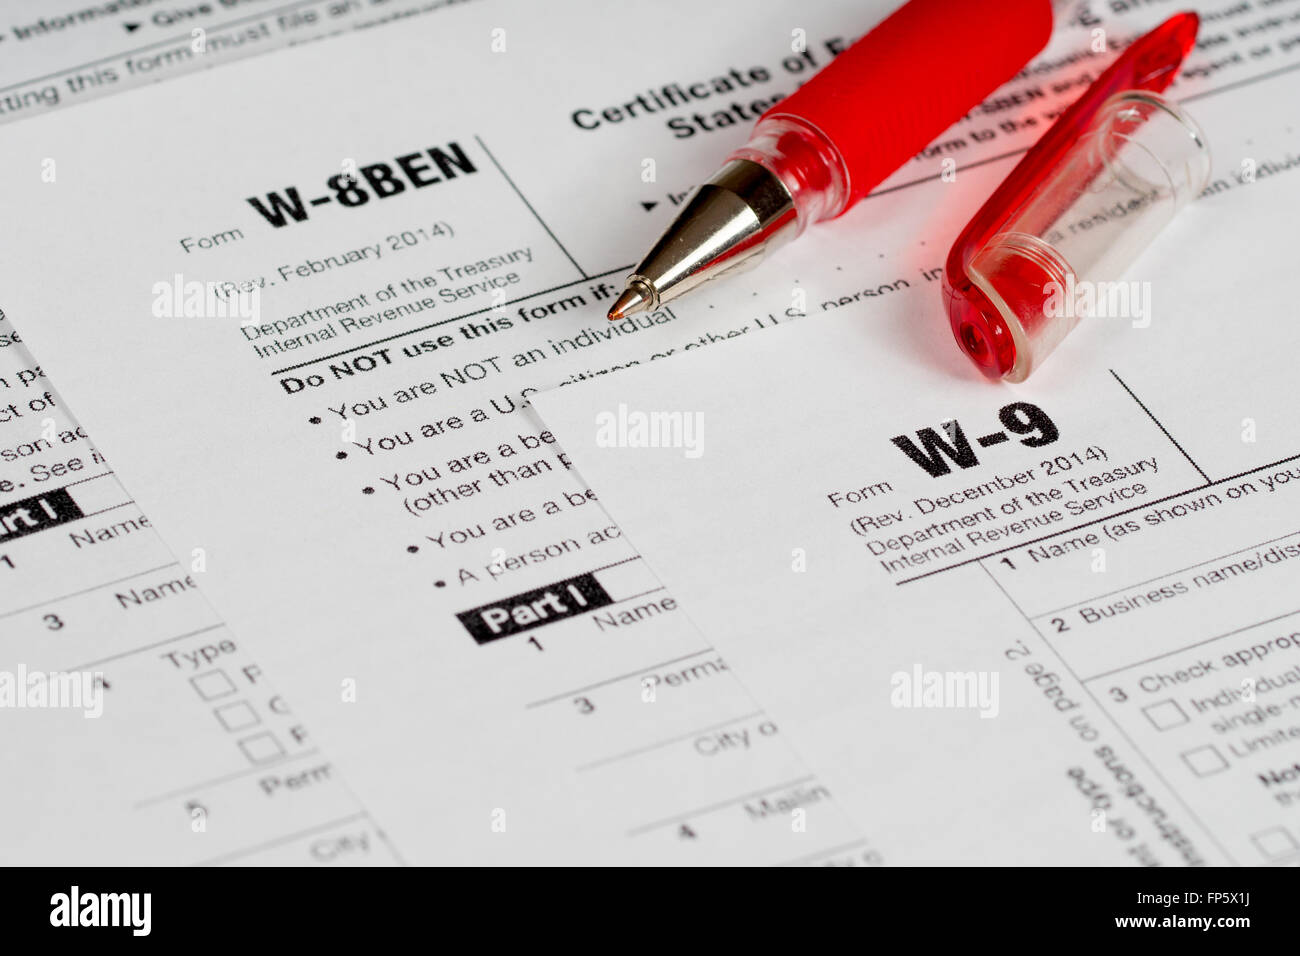 Steuererklärung Formulare mit geöffneten roten Stift Stockfoto